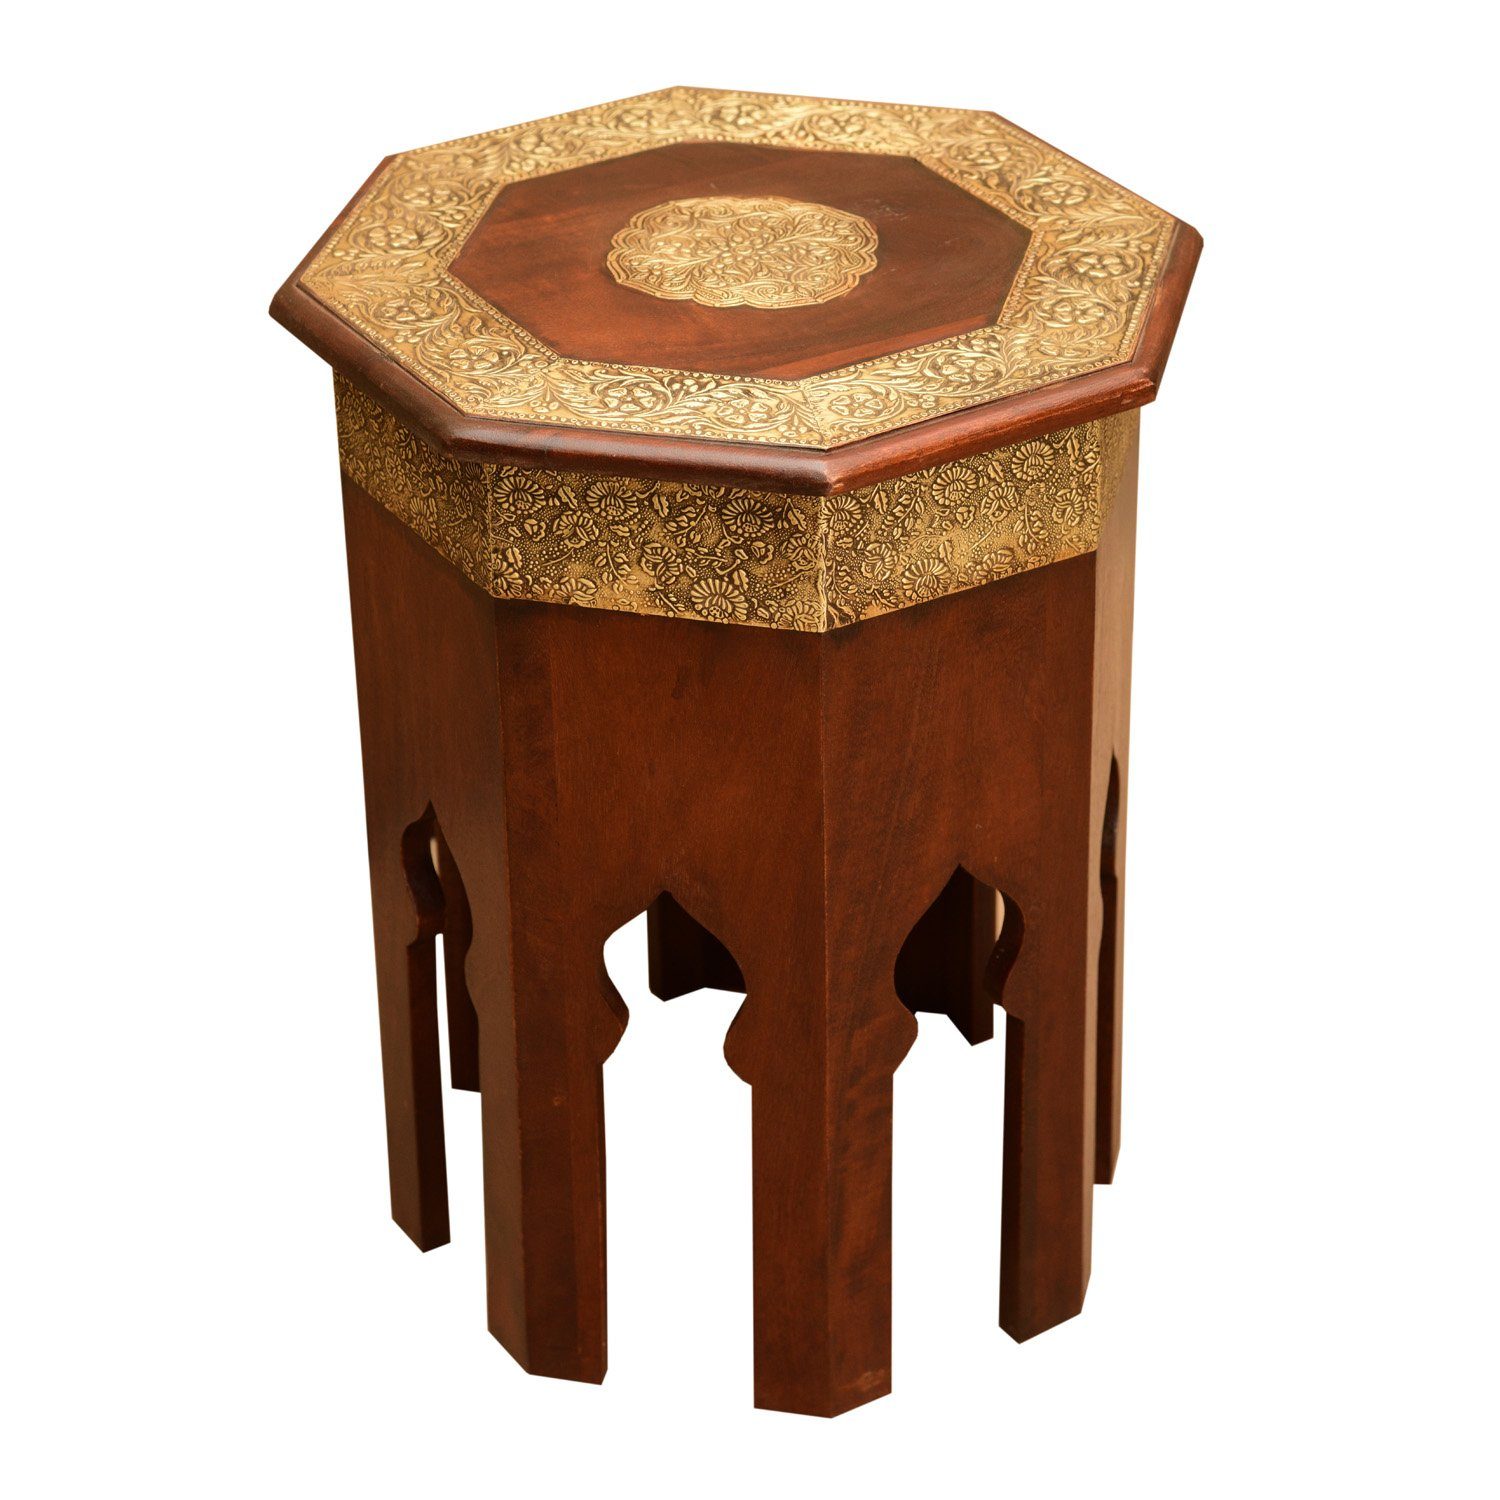 Casa Moro Beistelltisch Orientalischer Beistelltisch Meena Ø 40 cm rot-braun Gold Holz Messing, marokkanischer Stil in Vintage Look